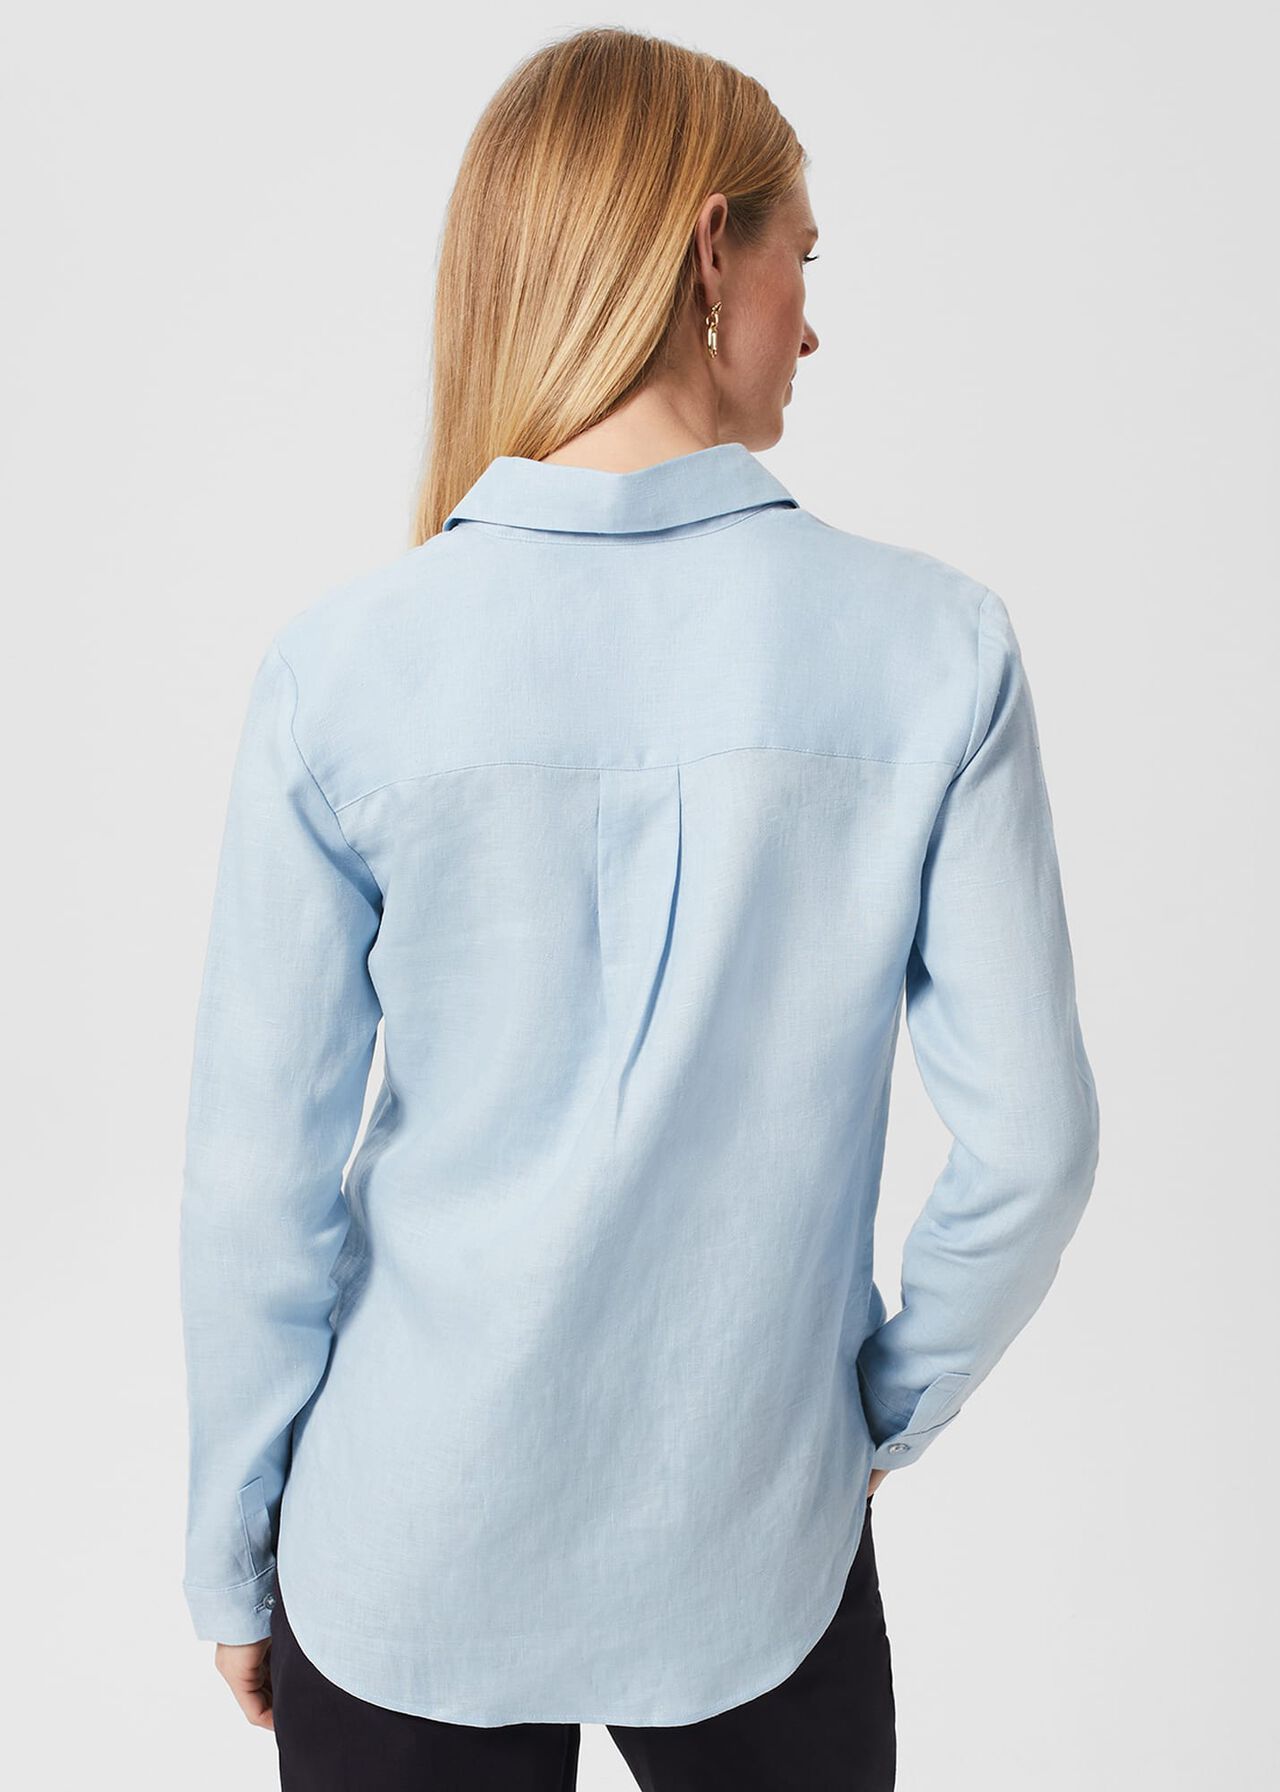 Arwen Shirt, Blue, hi-res